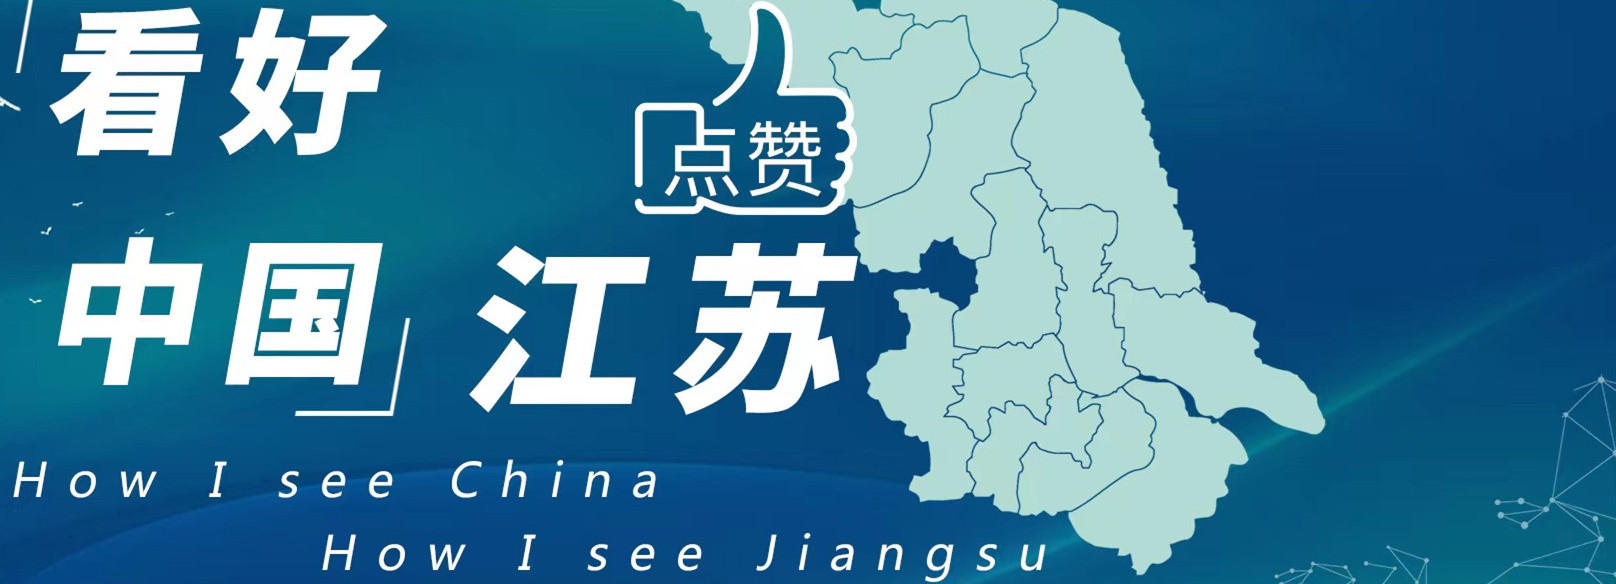 How I see Jiangsu.jpg